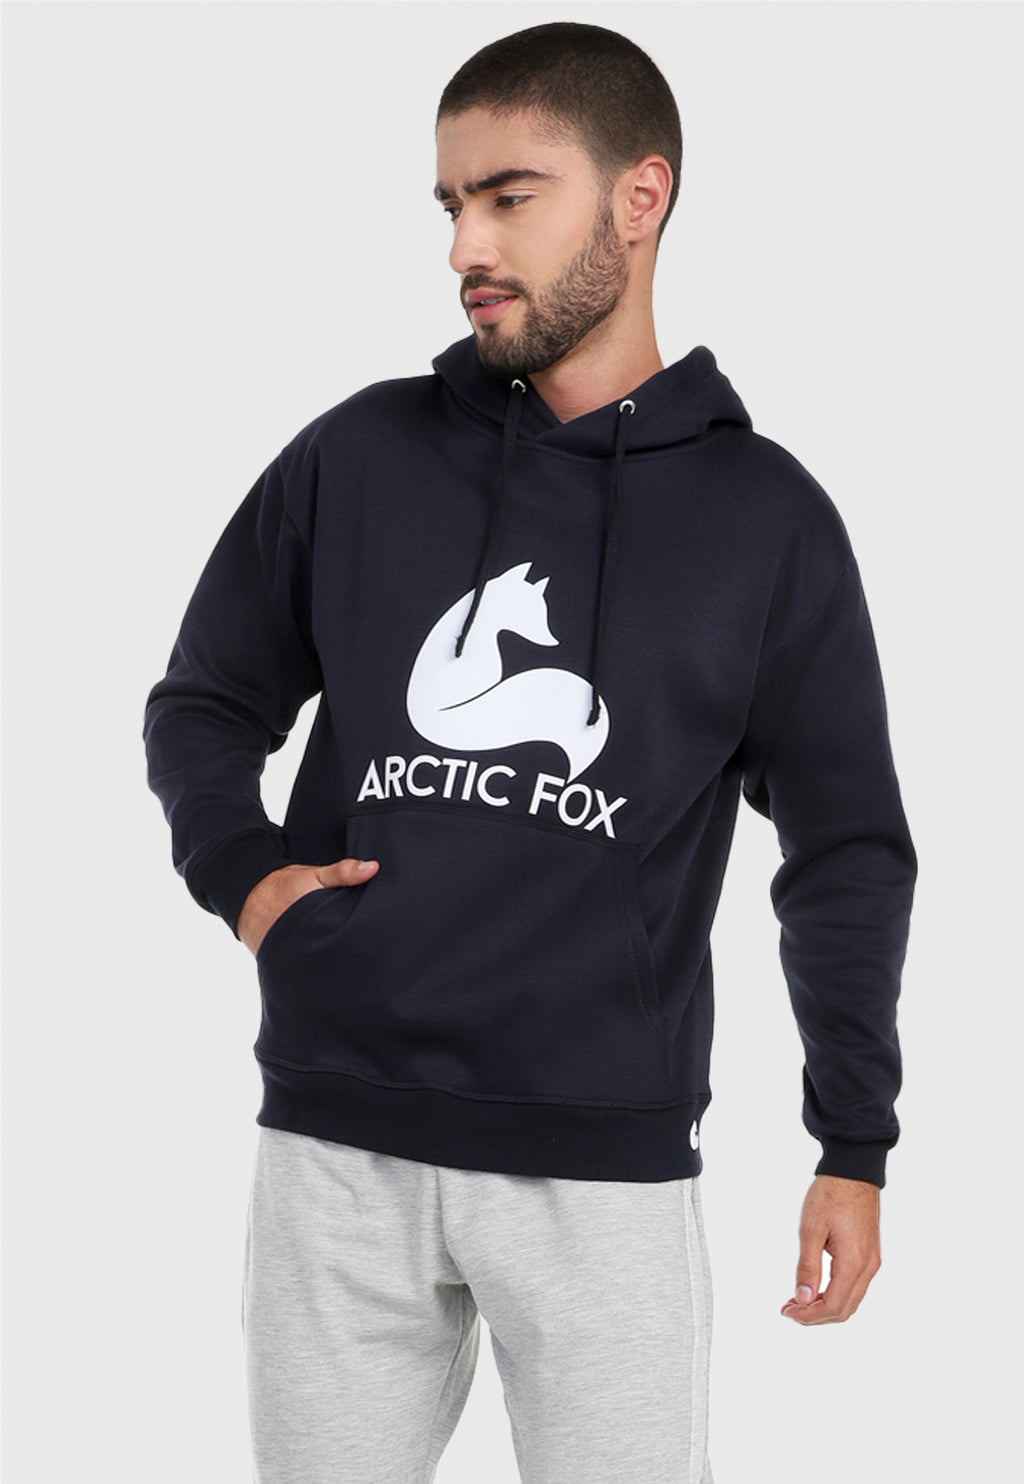 Hombre vistiendo el buzo hoodie azul navi para hombre Arctic Fox.